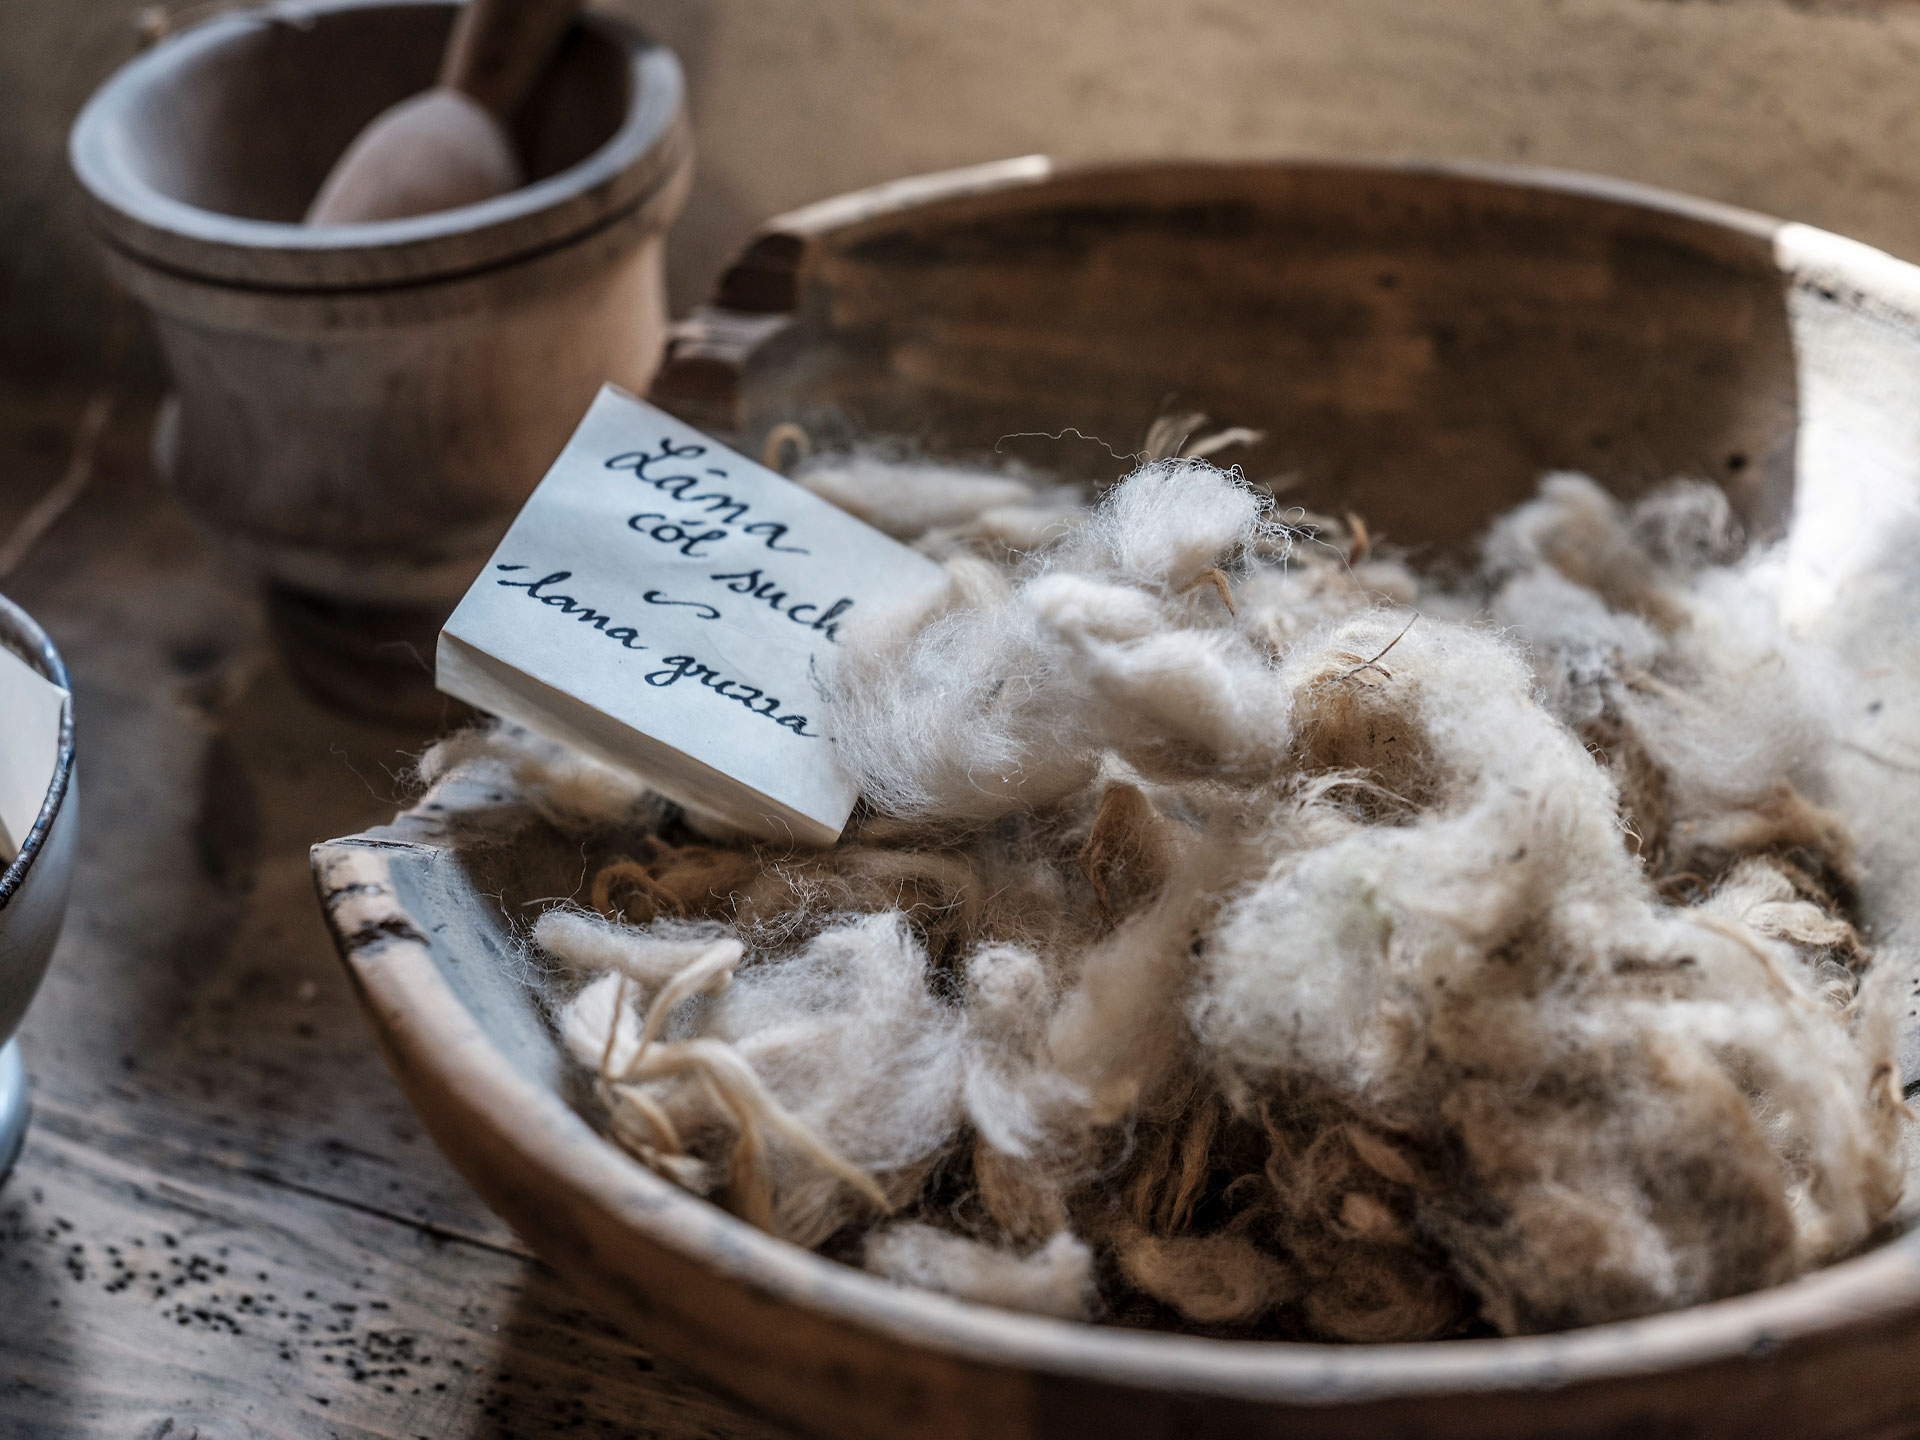 La lana grezza, non lavata e trattata, veniva utilizzata come rimedio naturale per combattere gelo e malanni.